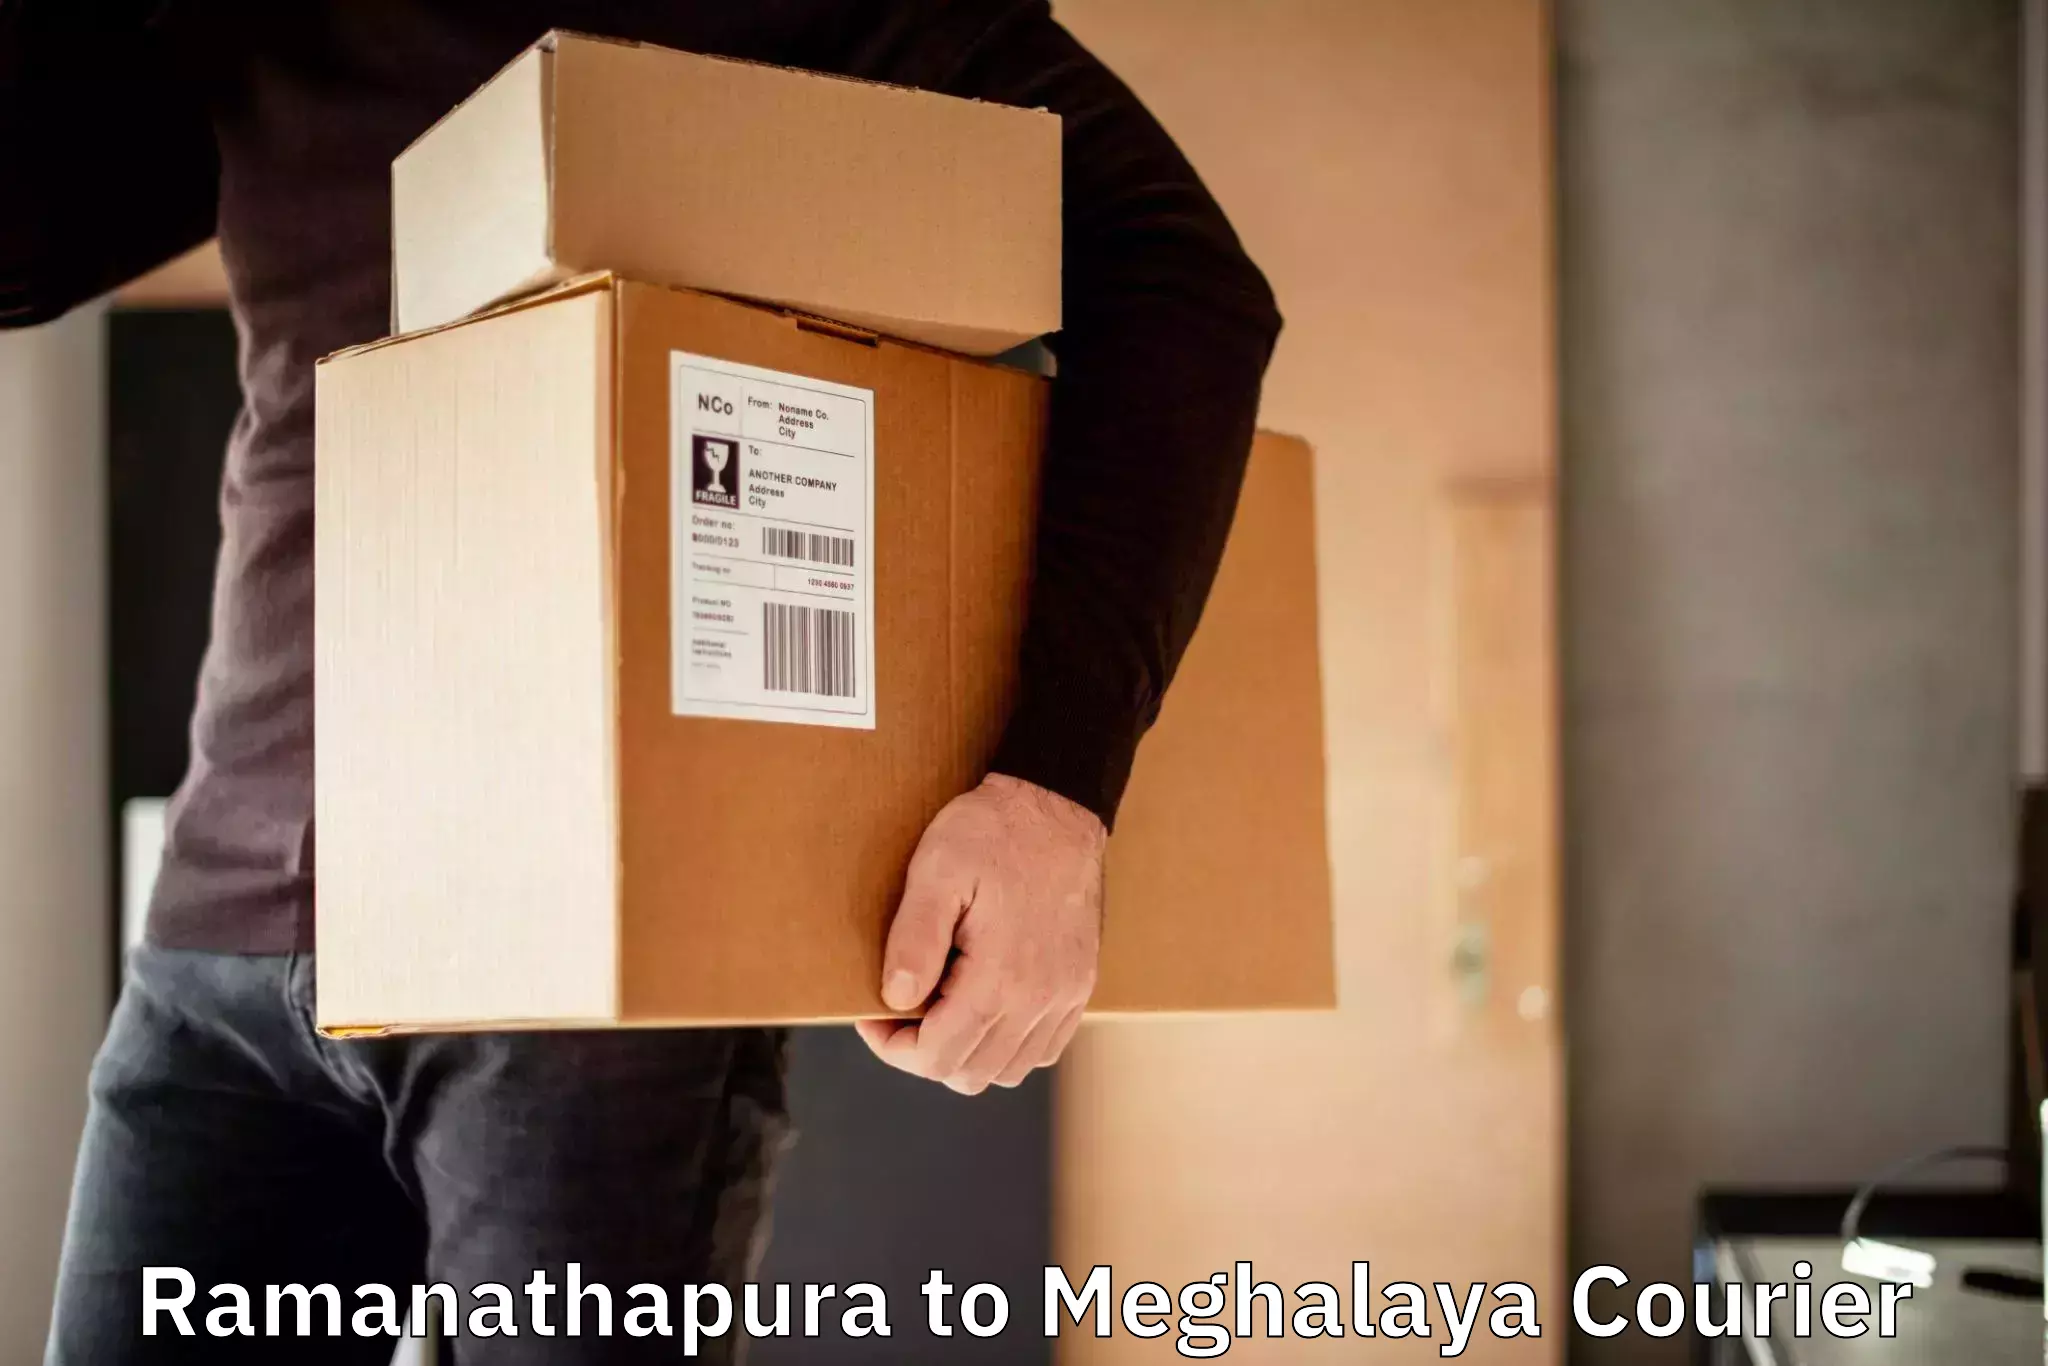 Express mail solutions Ramanathapura to Meghalaya